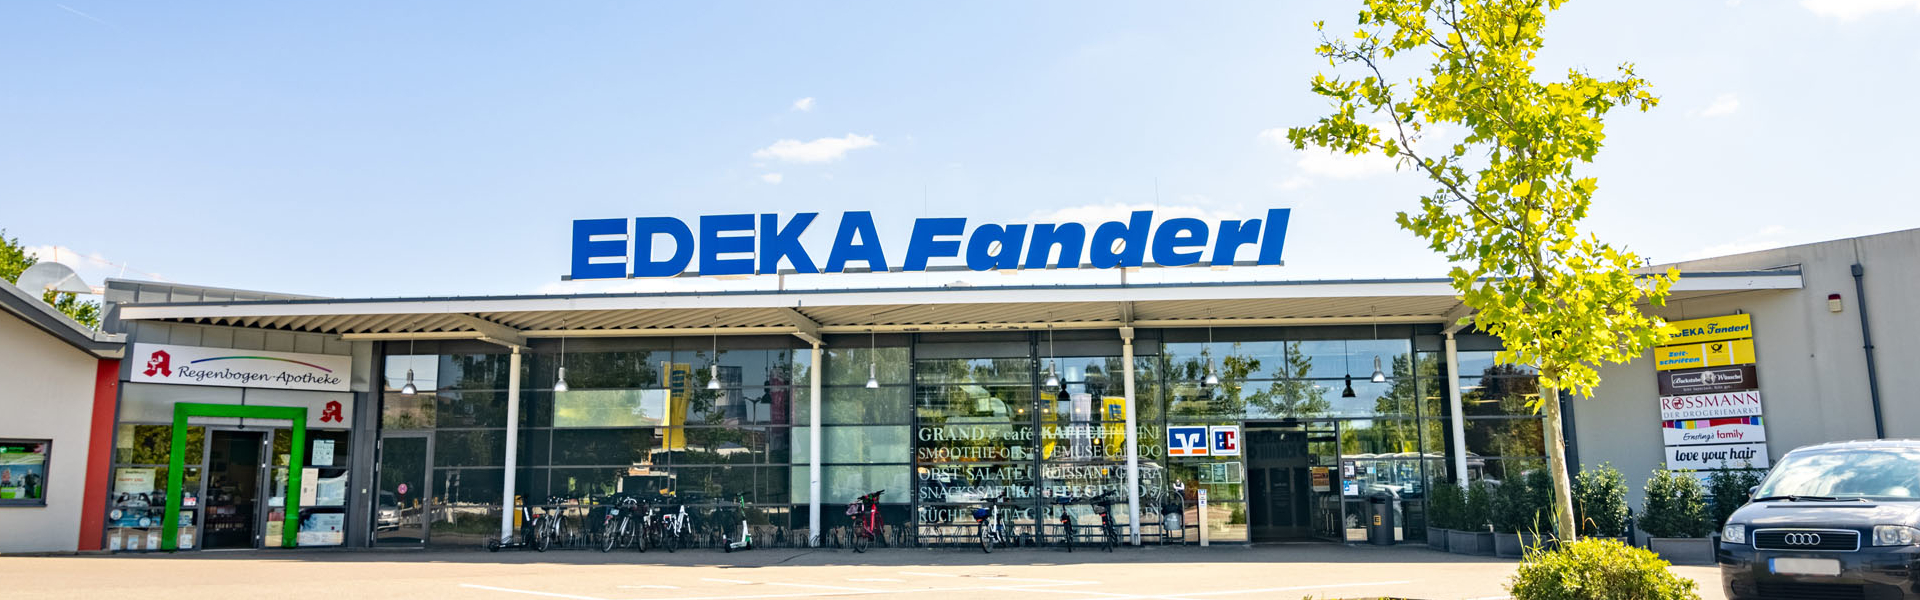 EDEKA Fanderl Berliner Straße Außenaufnahme 3